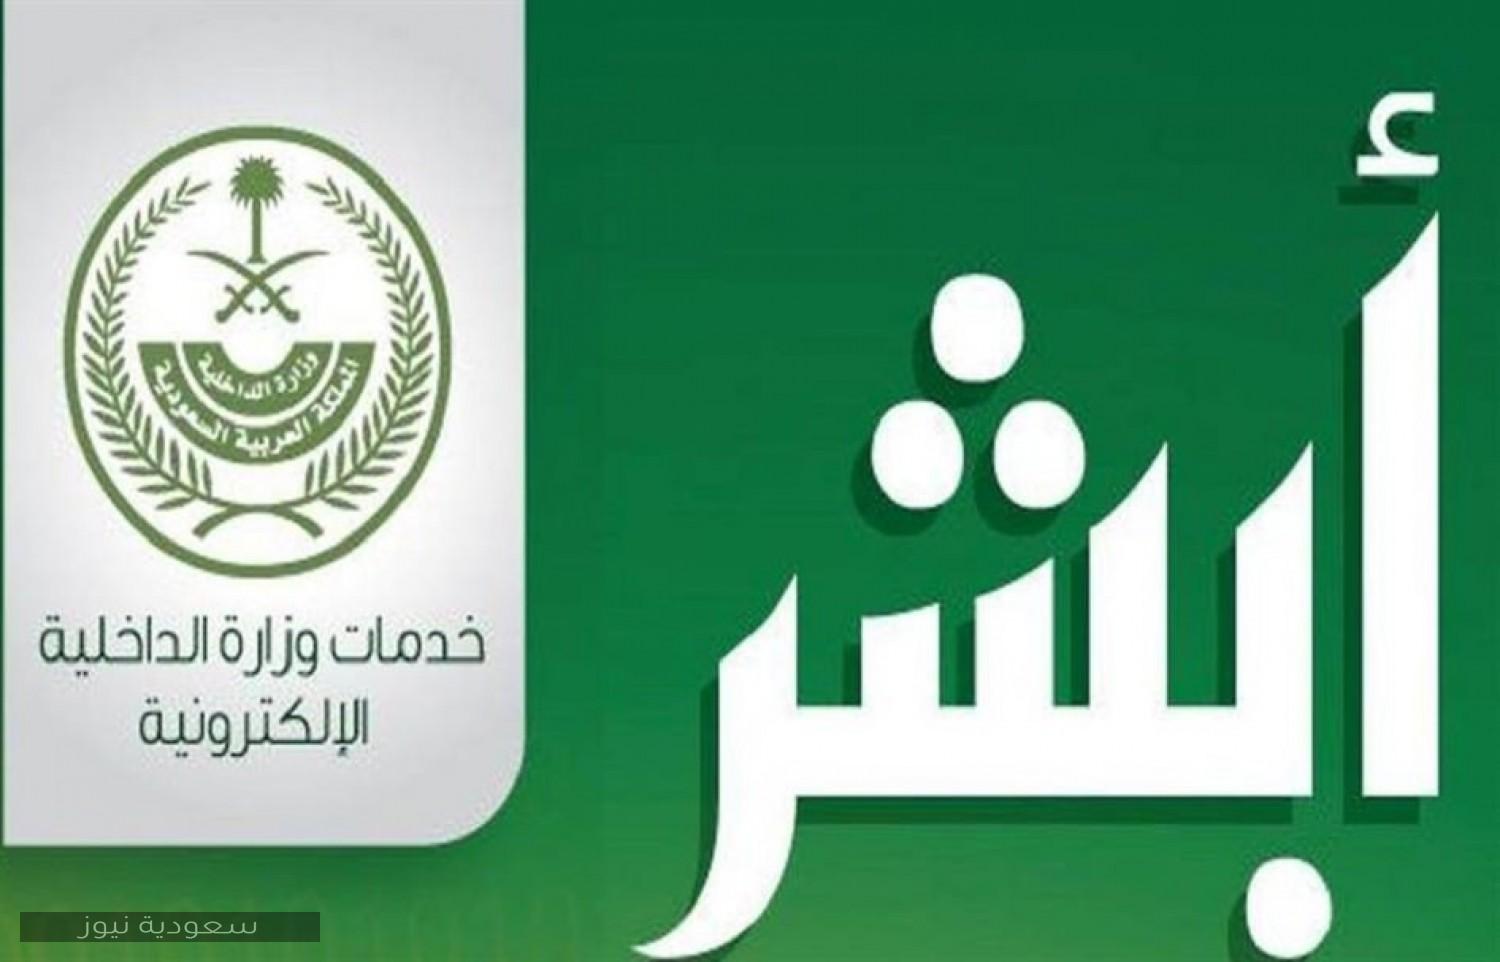 خطوات الاستعلام عن سبب إيقاف الخدمات من خلال أبشر وزارة الداخلية في المملكة العربية السعودية 1442